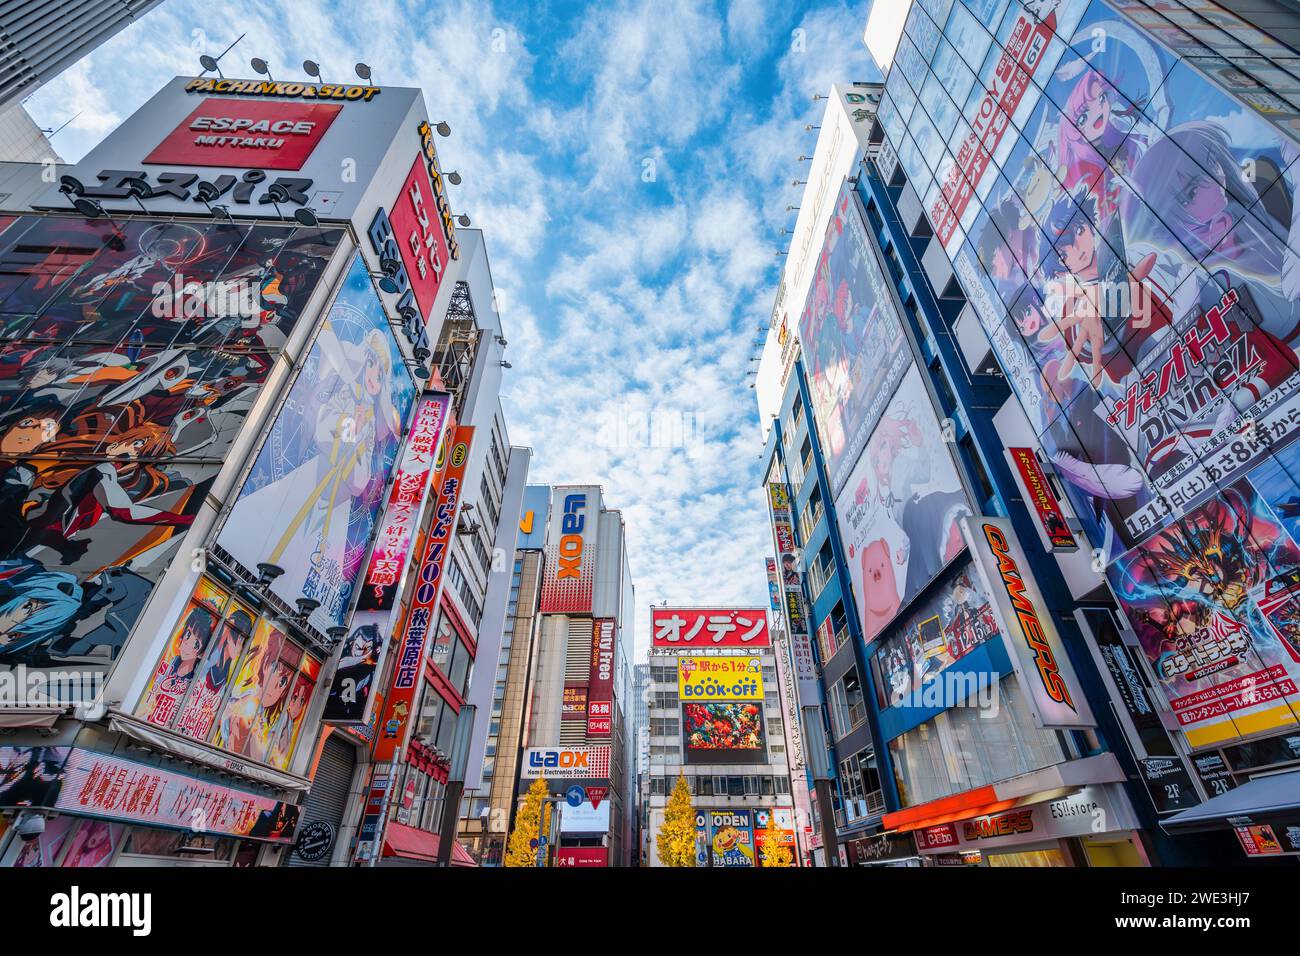 Insegne colorate e cartelloni pubblicitari ad Akihabara, Tokyo, Giappone. Akihabara è un quartiere dello shopping famoso per i suoi negozi di anime, manga, videogiochi e computer. Foto Stock